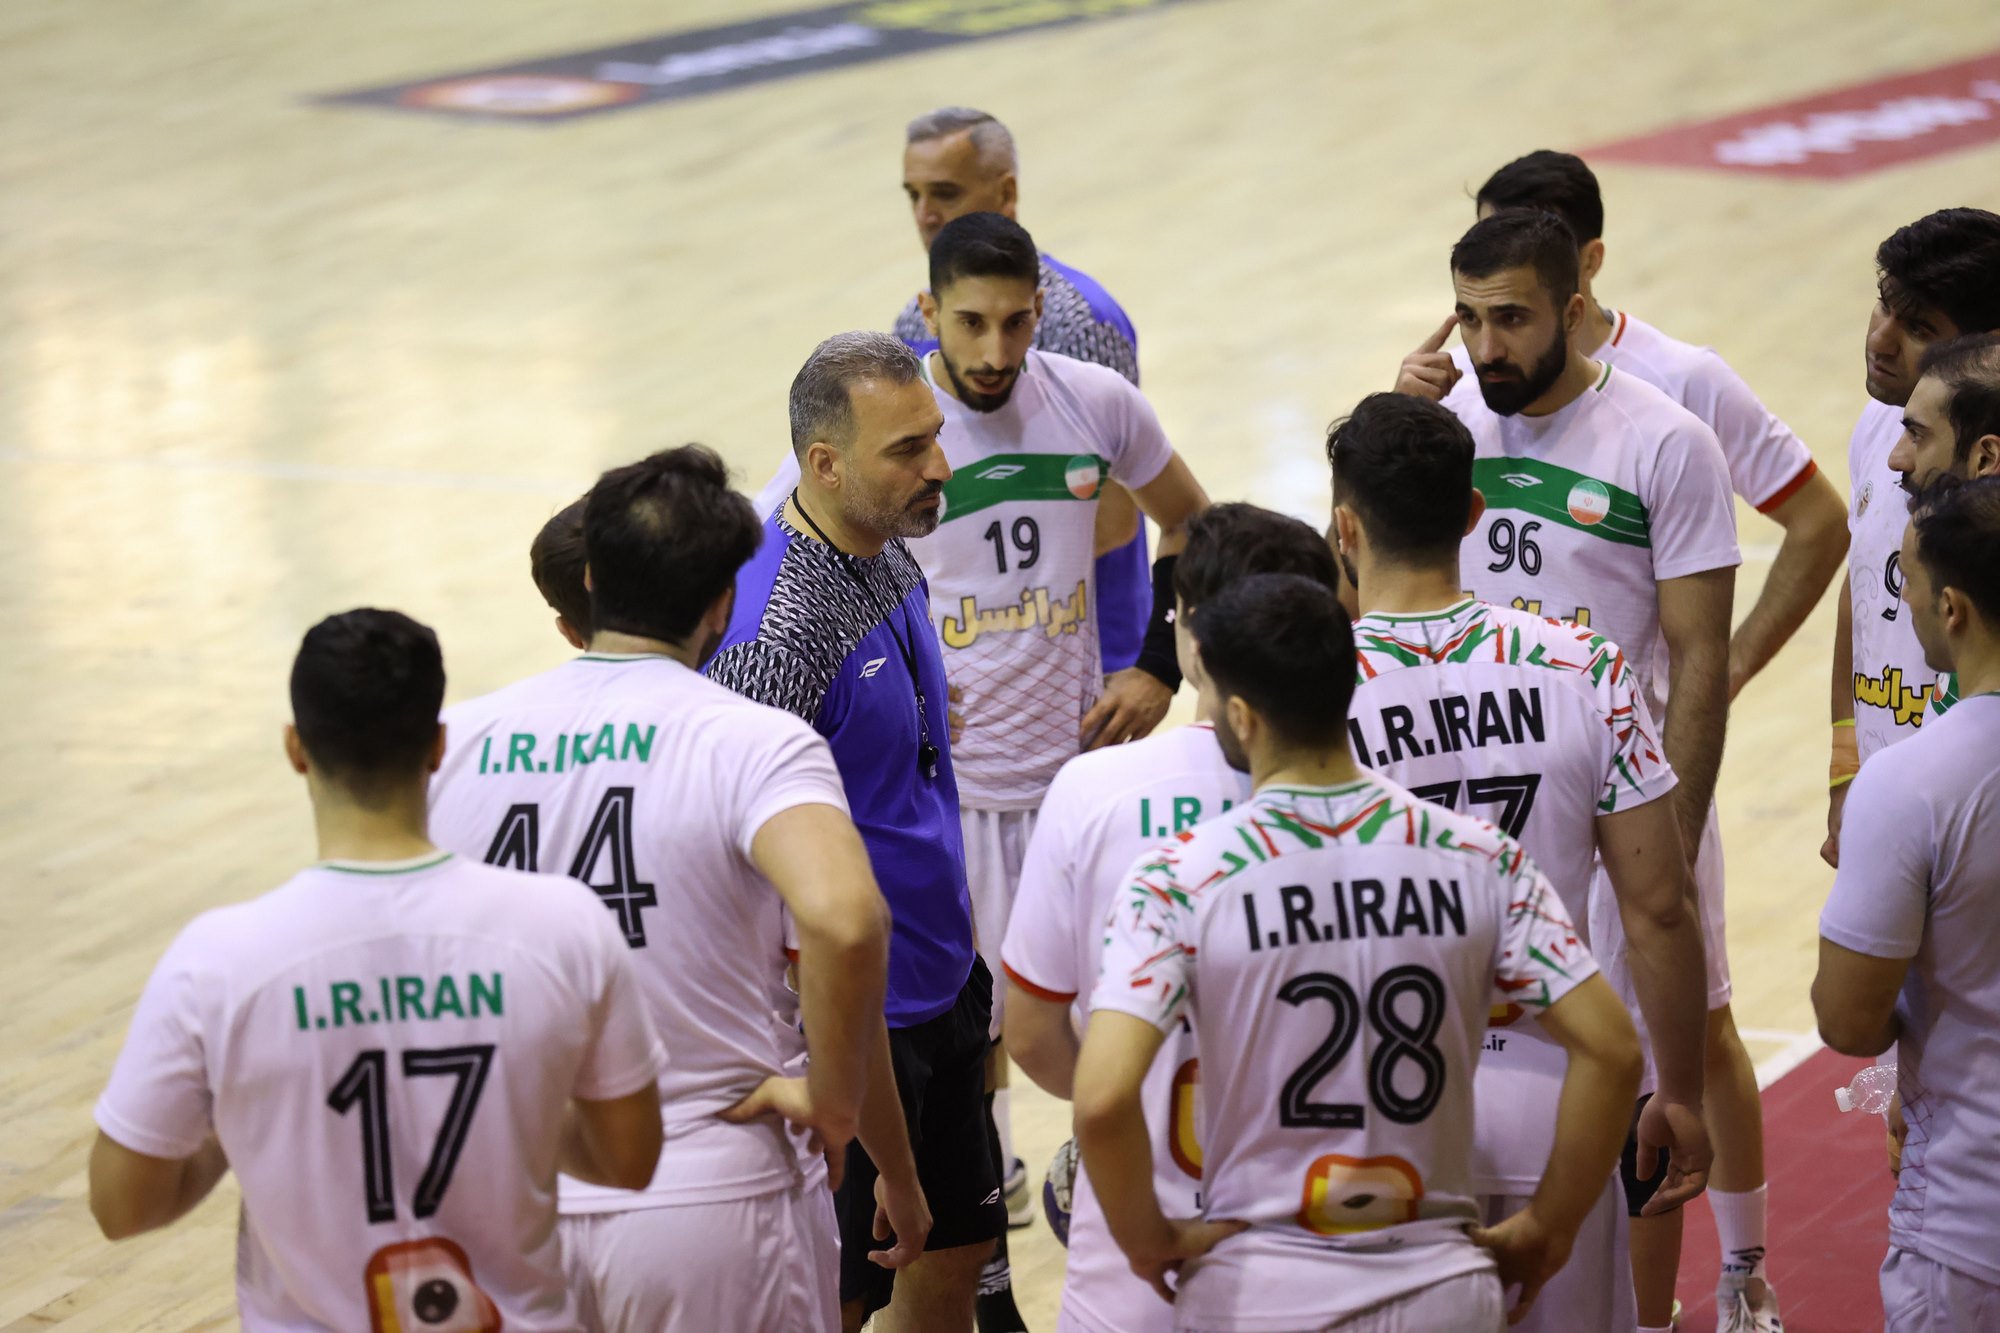  9 اصفهانی در تیم ملی هندبال ایران